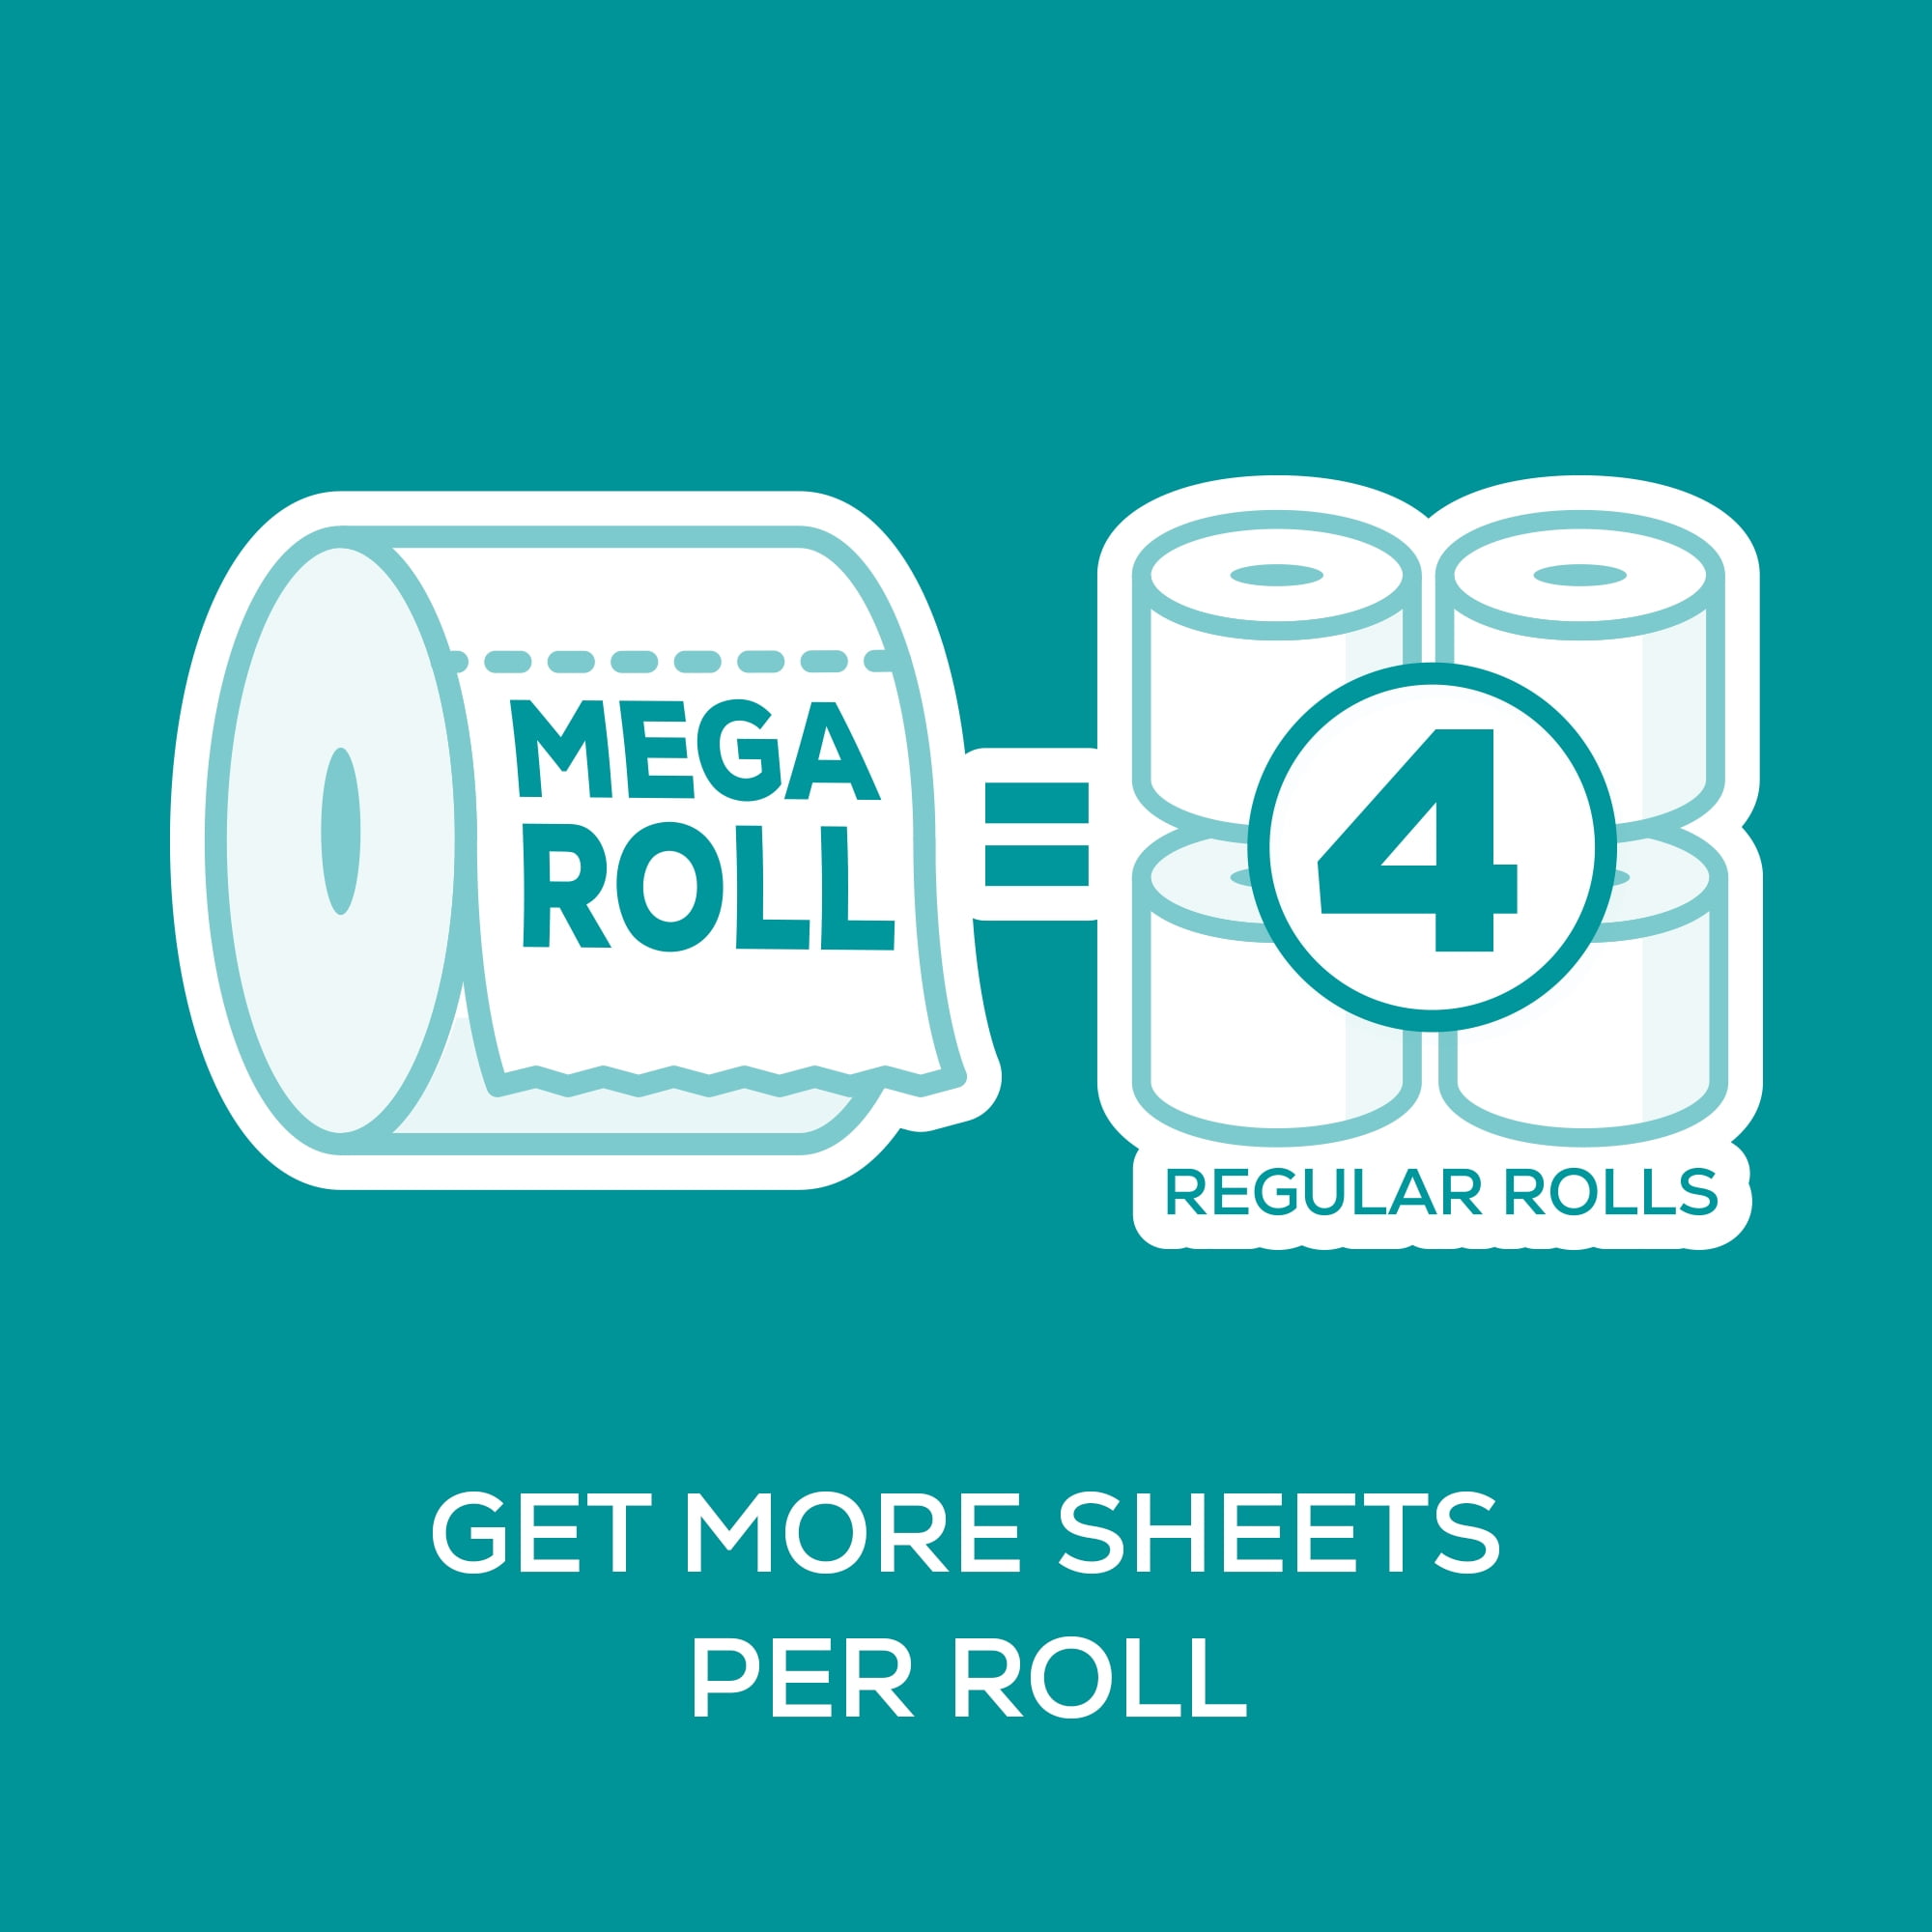 Angel Soft Toilet Paper - 16 Mega Rolls : Target